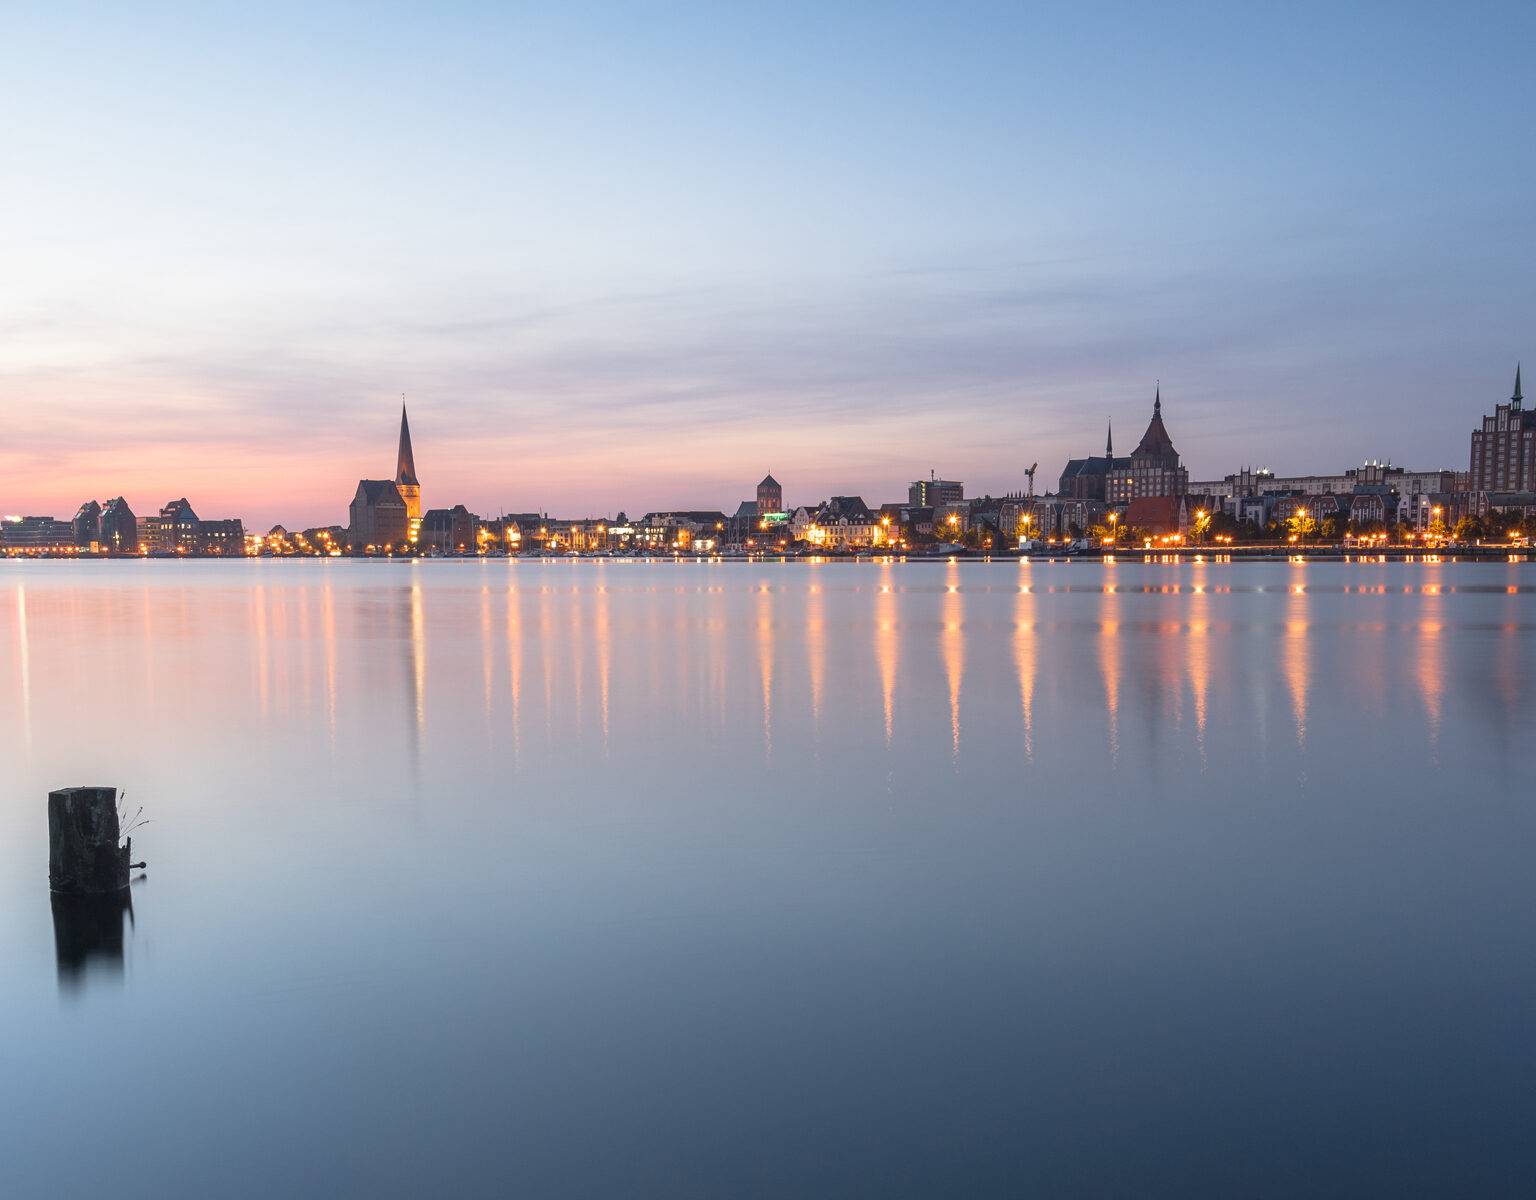 Die Skyline von Rostock liegt mit Lichtern erleuchtet vor dem Wasser im Sonnenuntergang, der Himmel und das Wasser sind pink gefärbt.